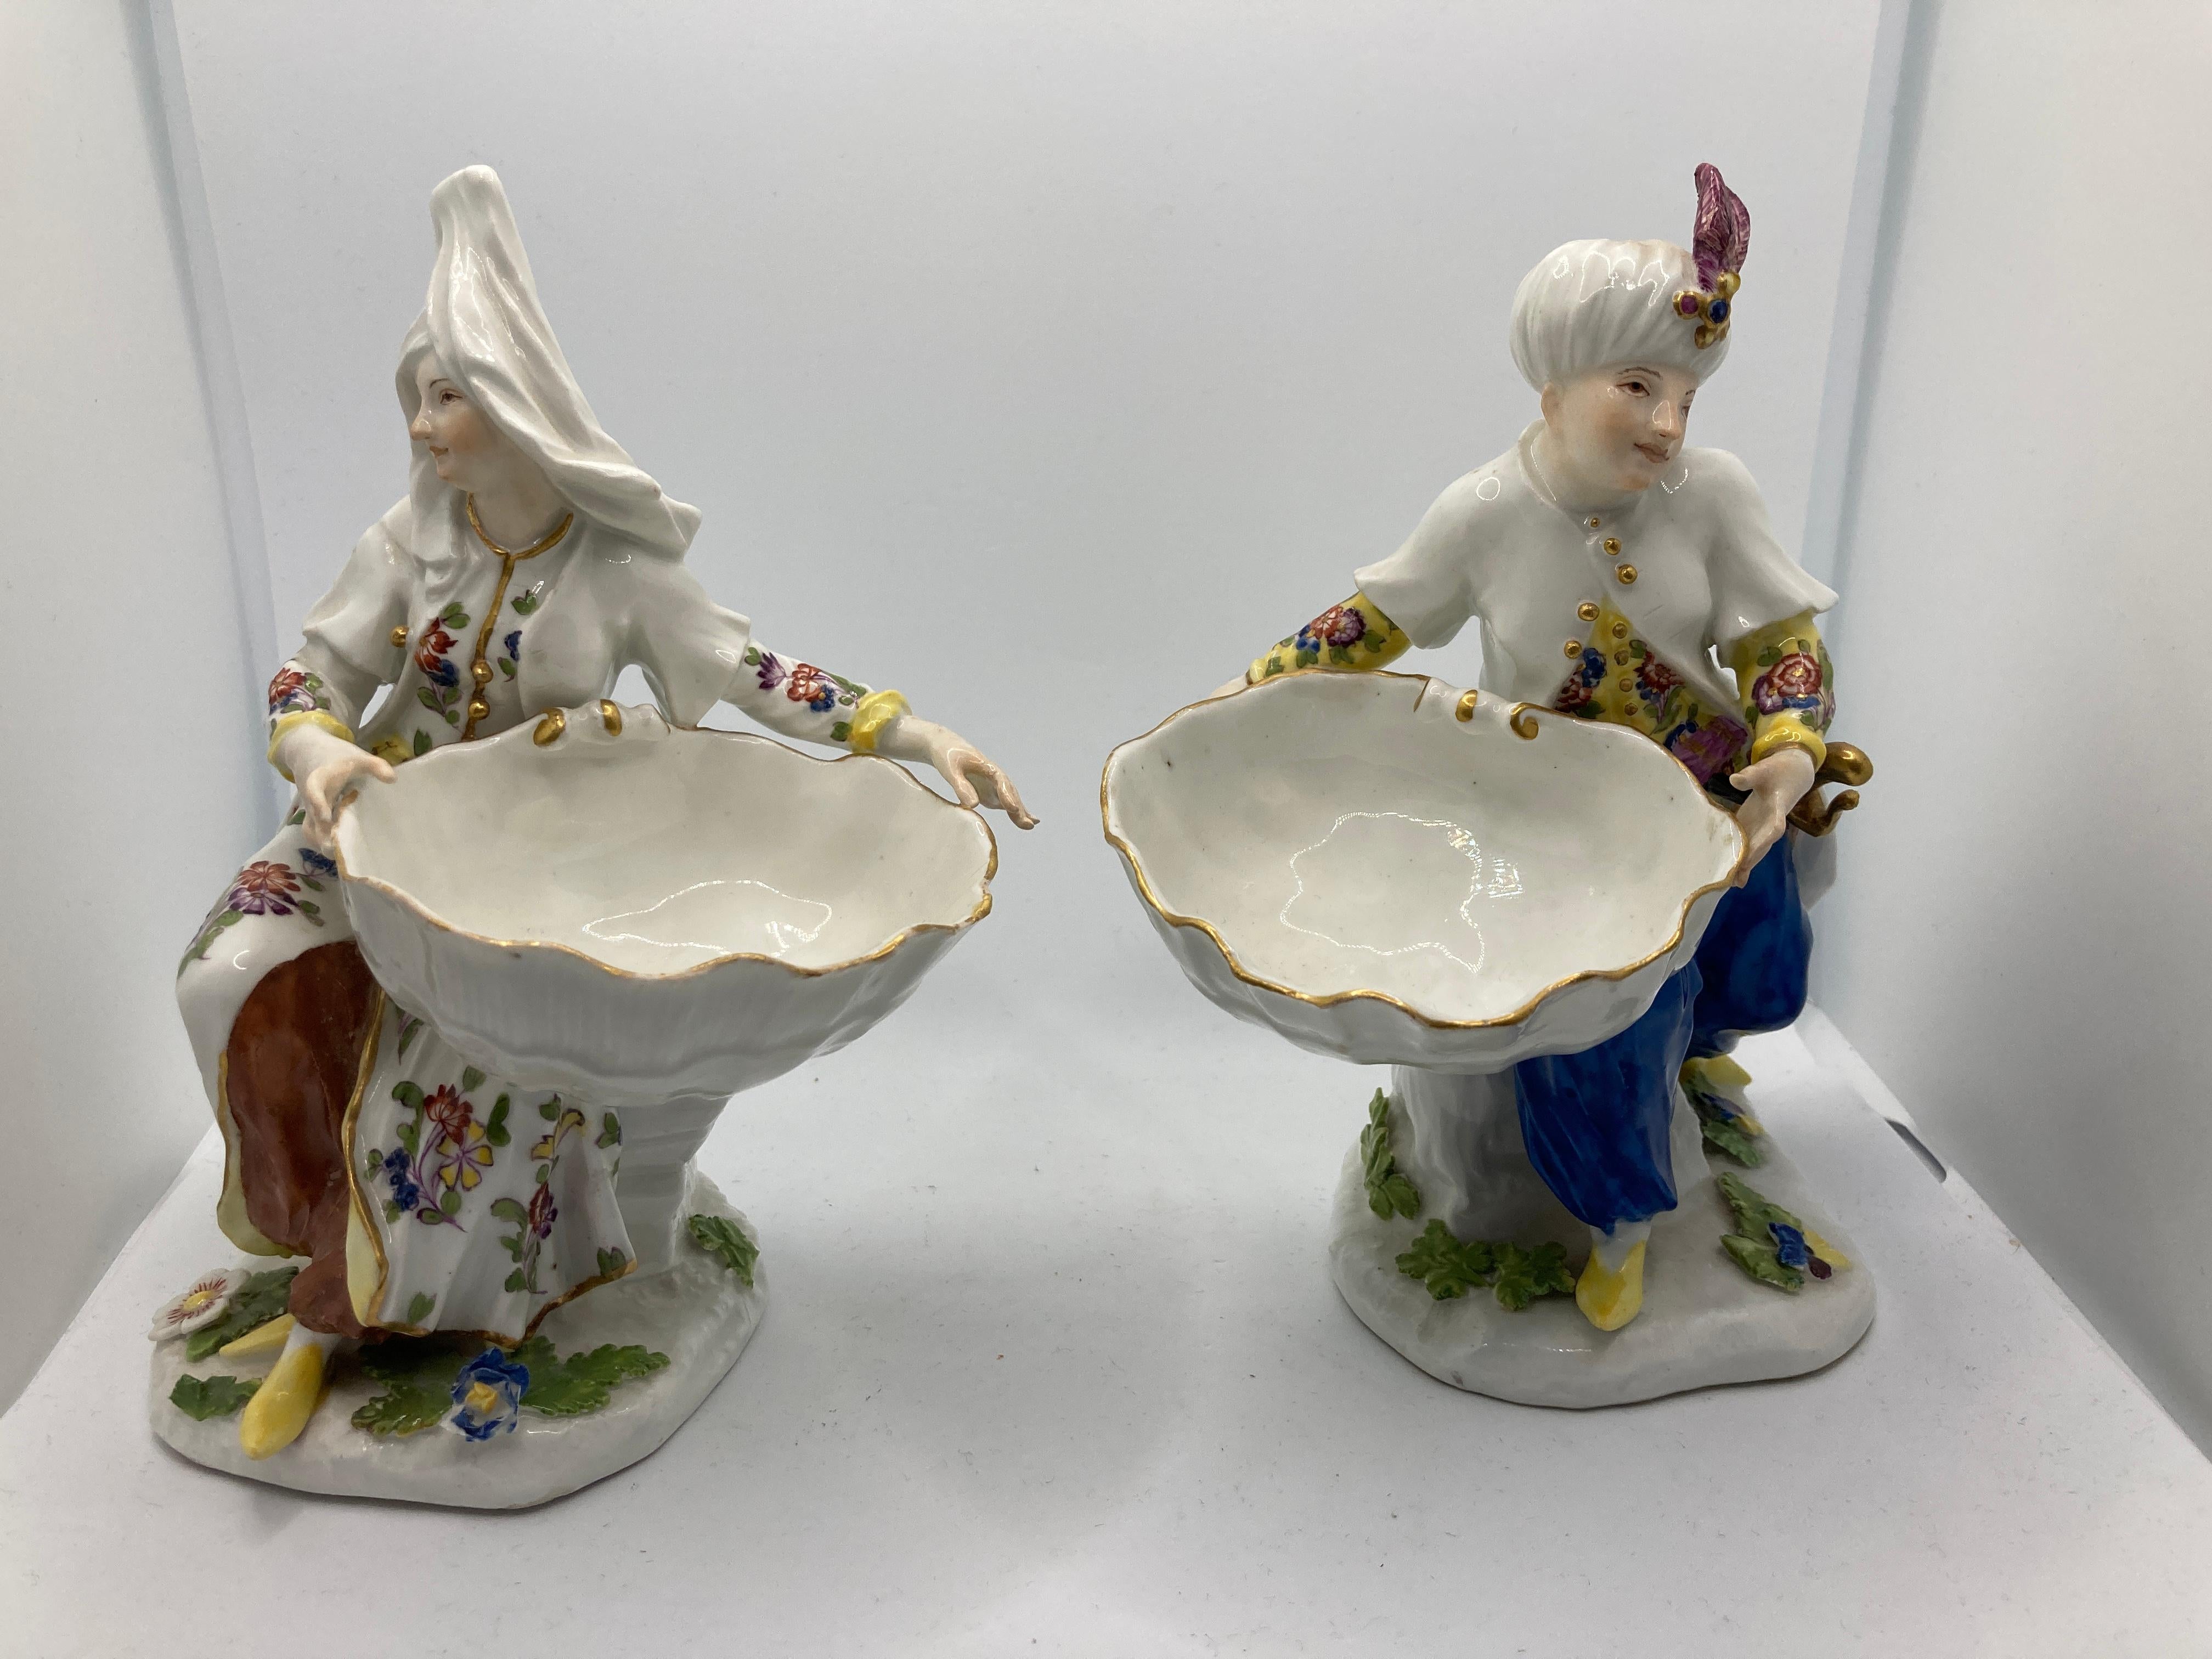 Porcelaine de Meissen du 18e siècle, Paire de personnages turcs tenant des sucreries / salière de table. Ces figurines de confiserie ont été fabriquées vers 1745, les modèles originaux ayant été réalisés par J F Eberlain, et témoignent de la mode de